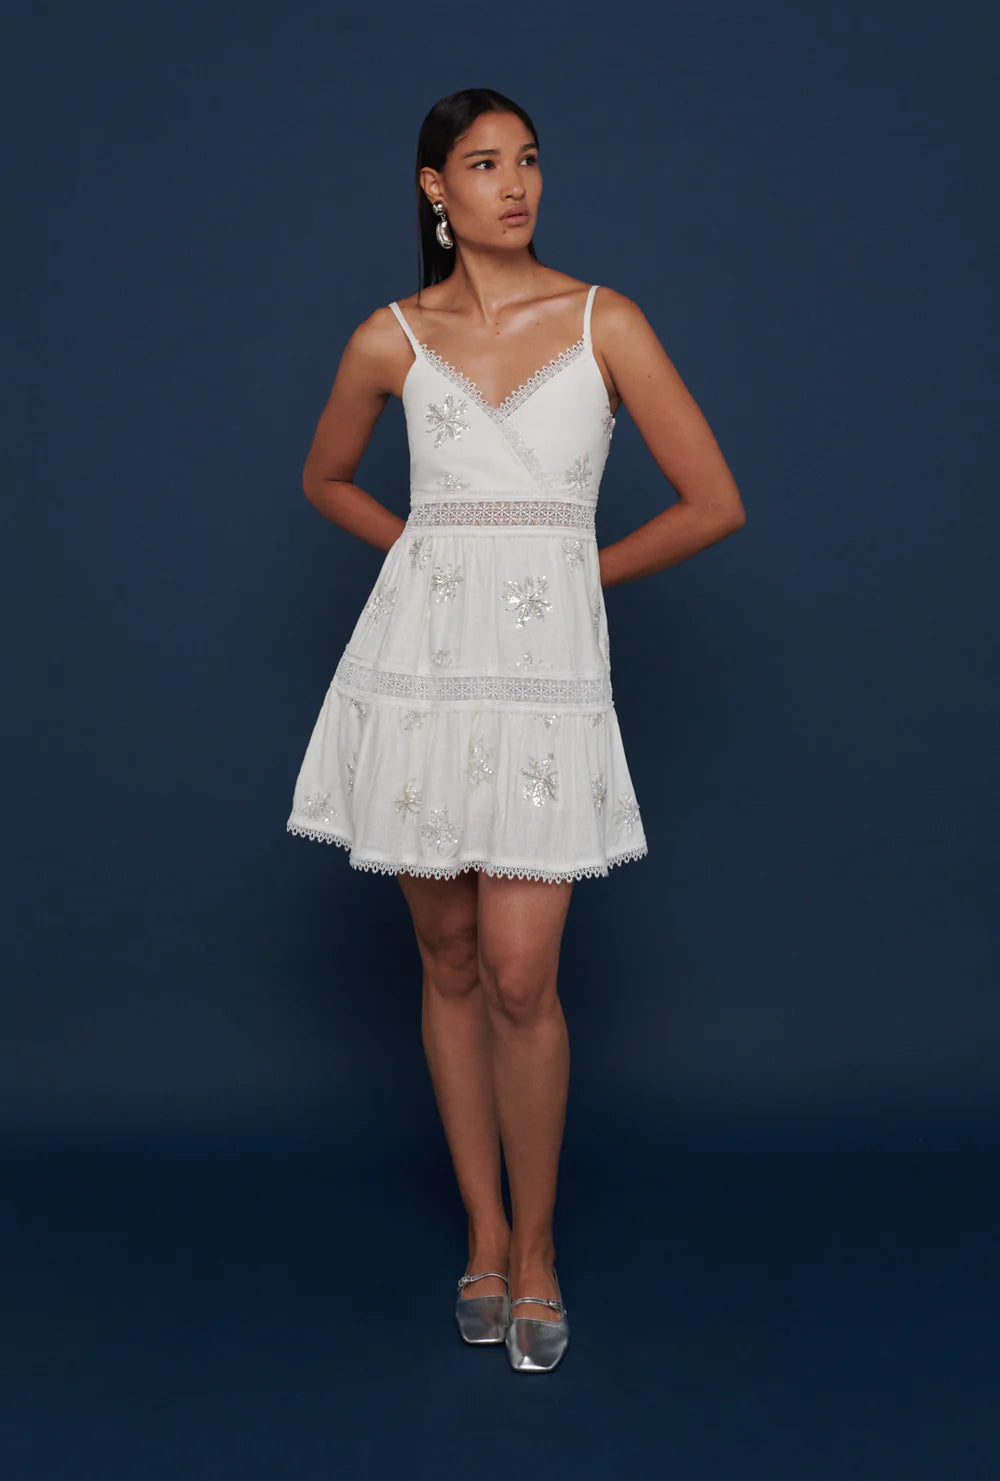 Waimari Angel Mini Dress Linen - Premium Mini Dress from Marina St Barth - Just $350! Shop now at Marina St Barth